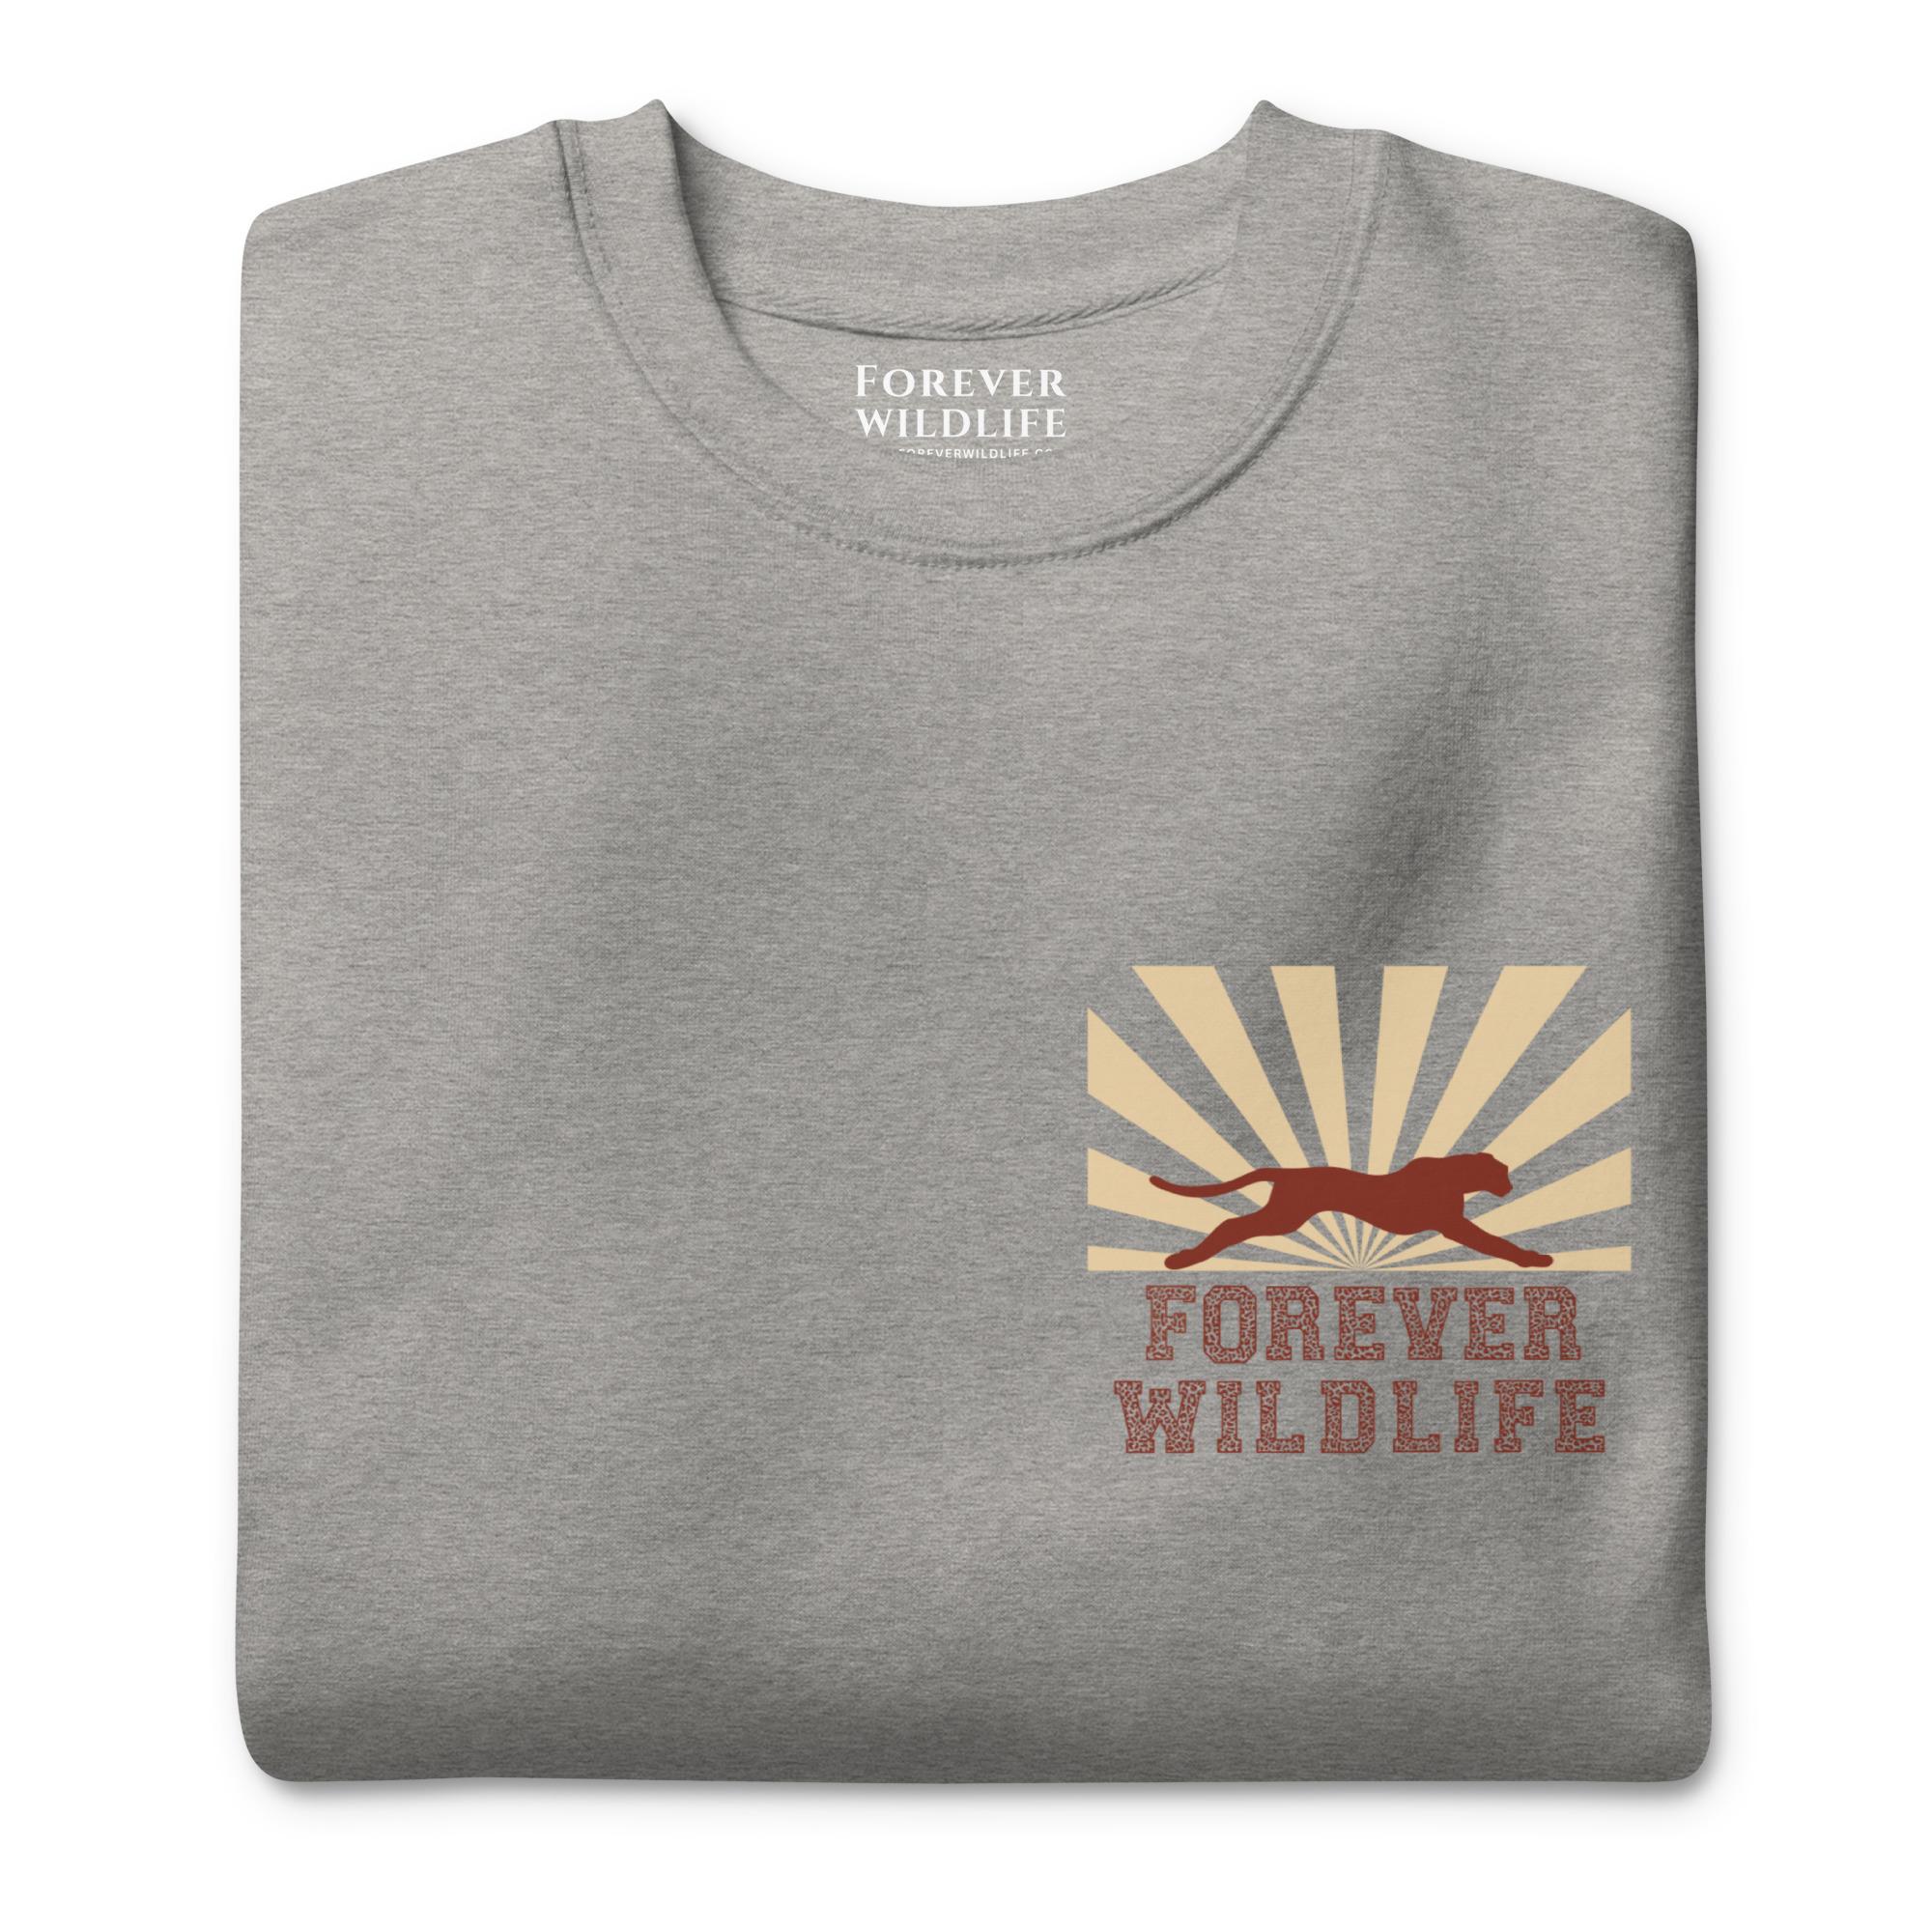 Cheetah Sweatshirt, beautiful Grey Cheetah sweatshirt with cheetah graphics made by Forever Wildlife Wildlife Sweatshirts.